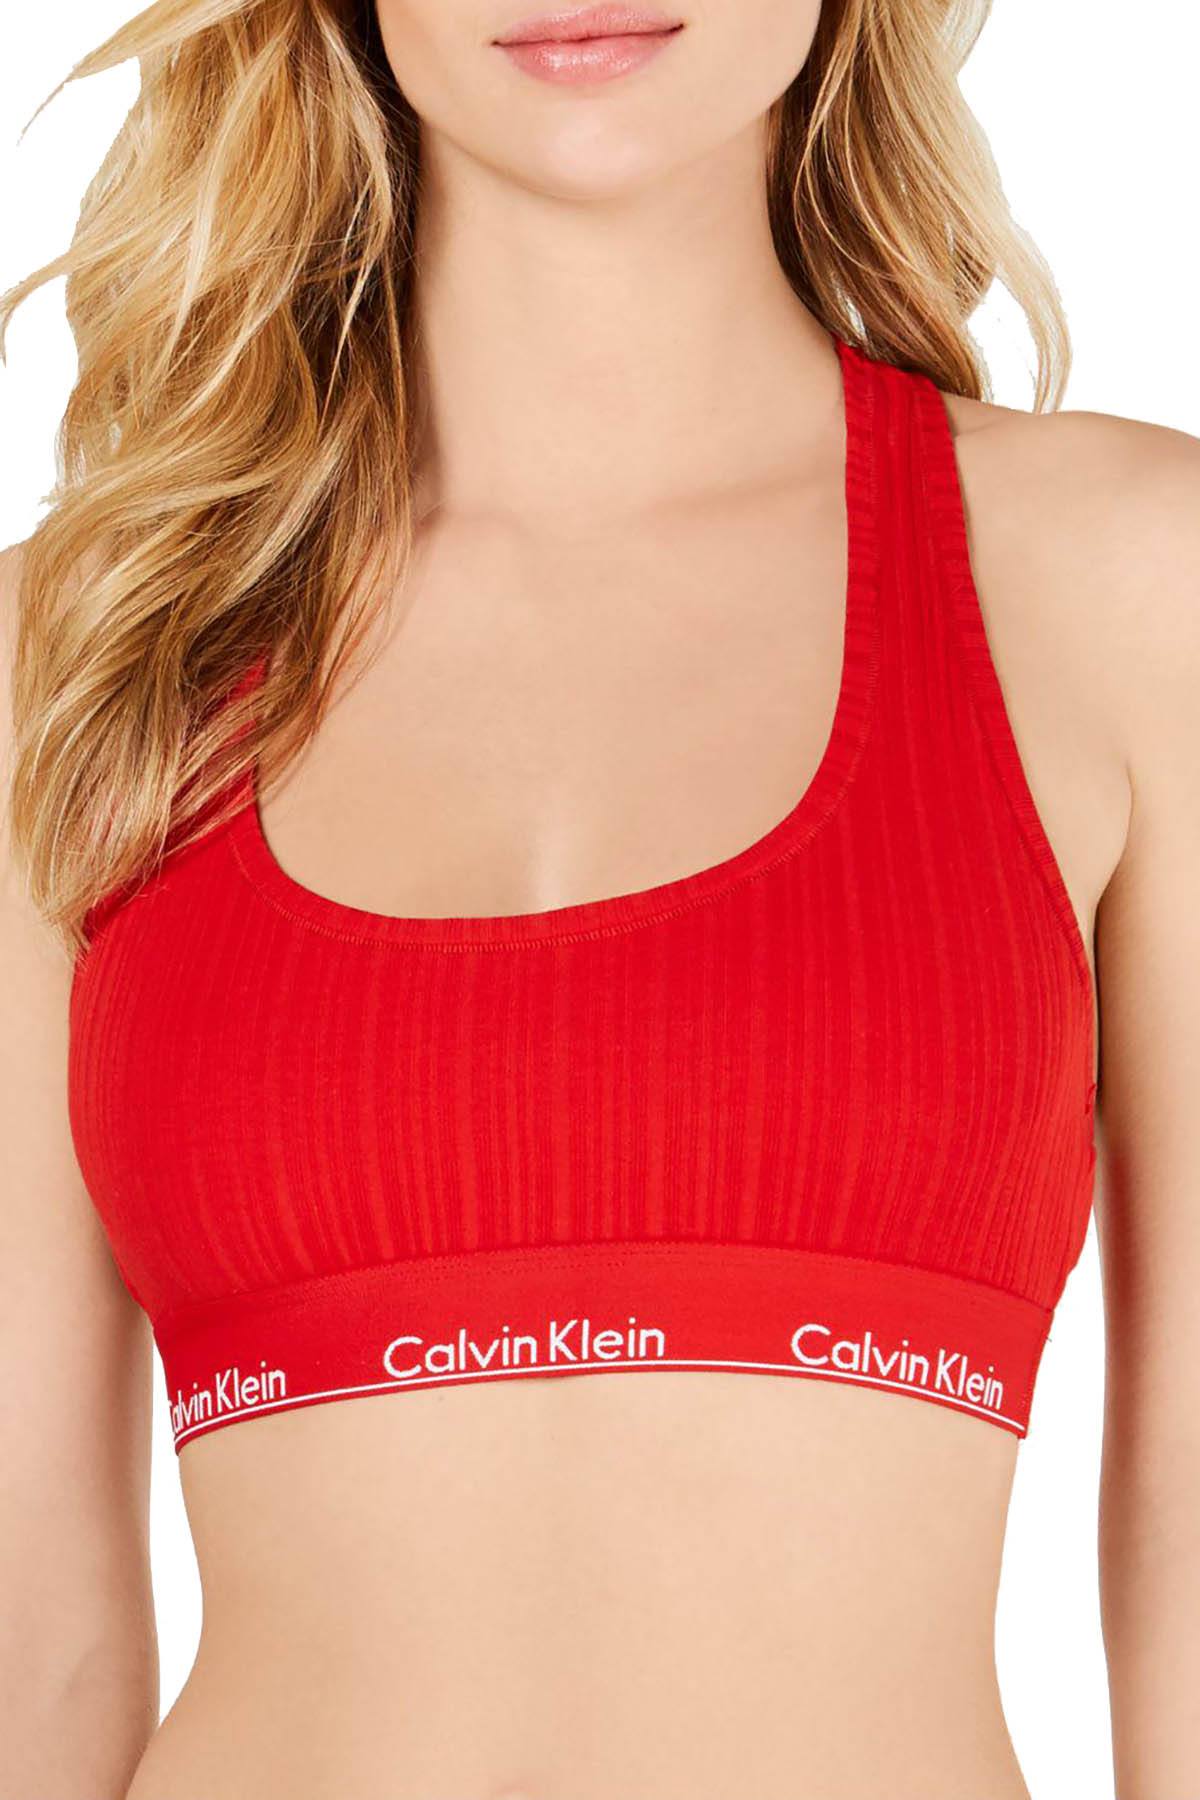 Calvin Klein Modern Cotton Racerback Red Bralette